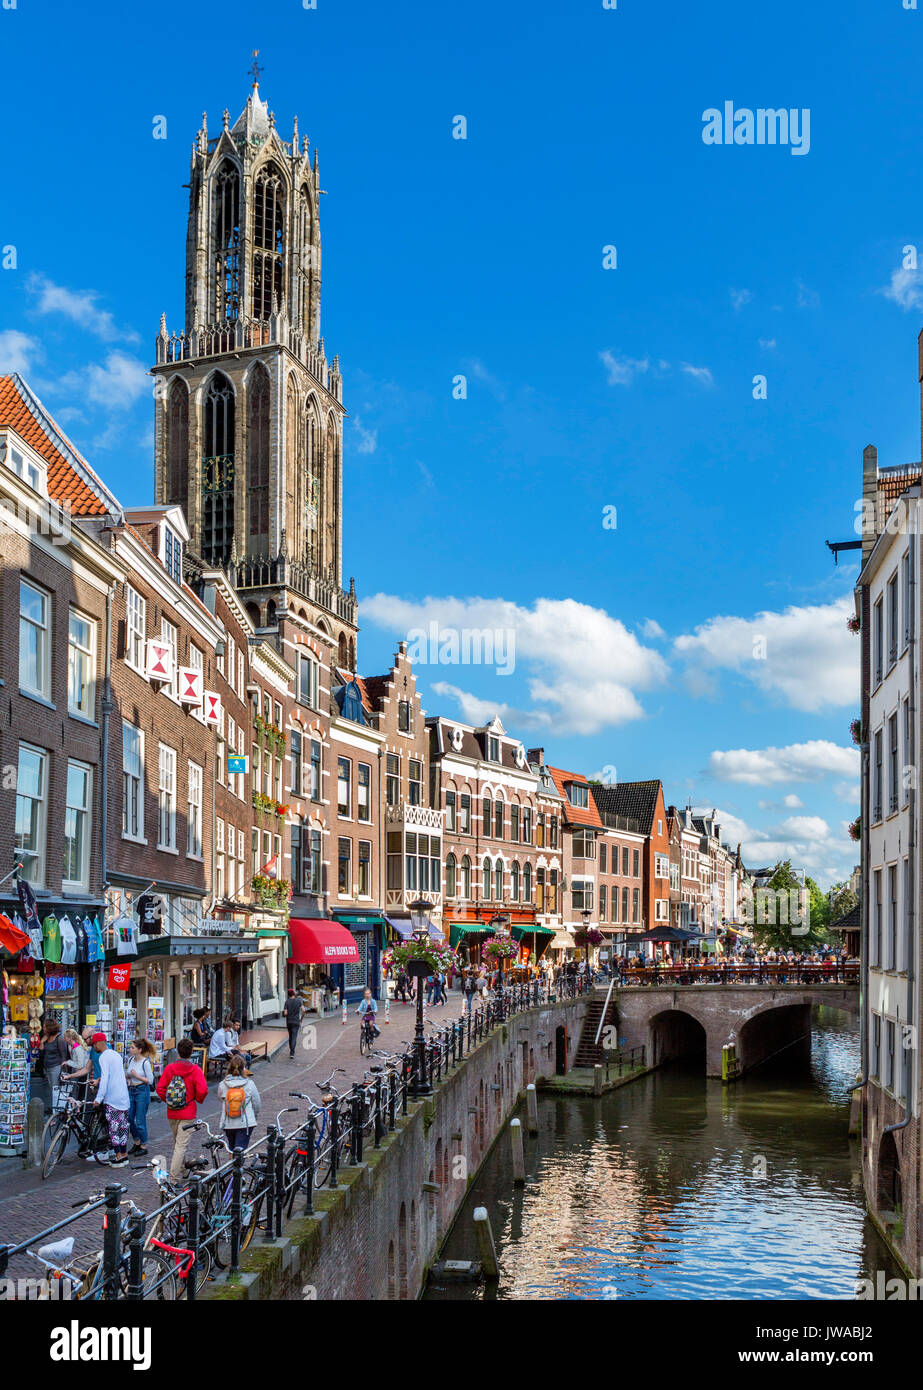 Geschäfte, Bars und Cafés entlang der Oudegracht (alten Kanal) mit dem Dom Tower hinter, Utrecht, Niederlande Stockfoto